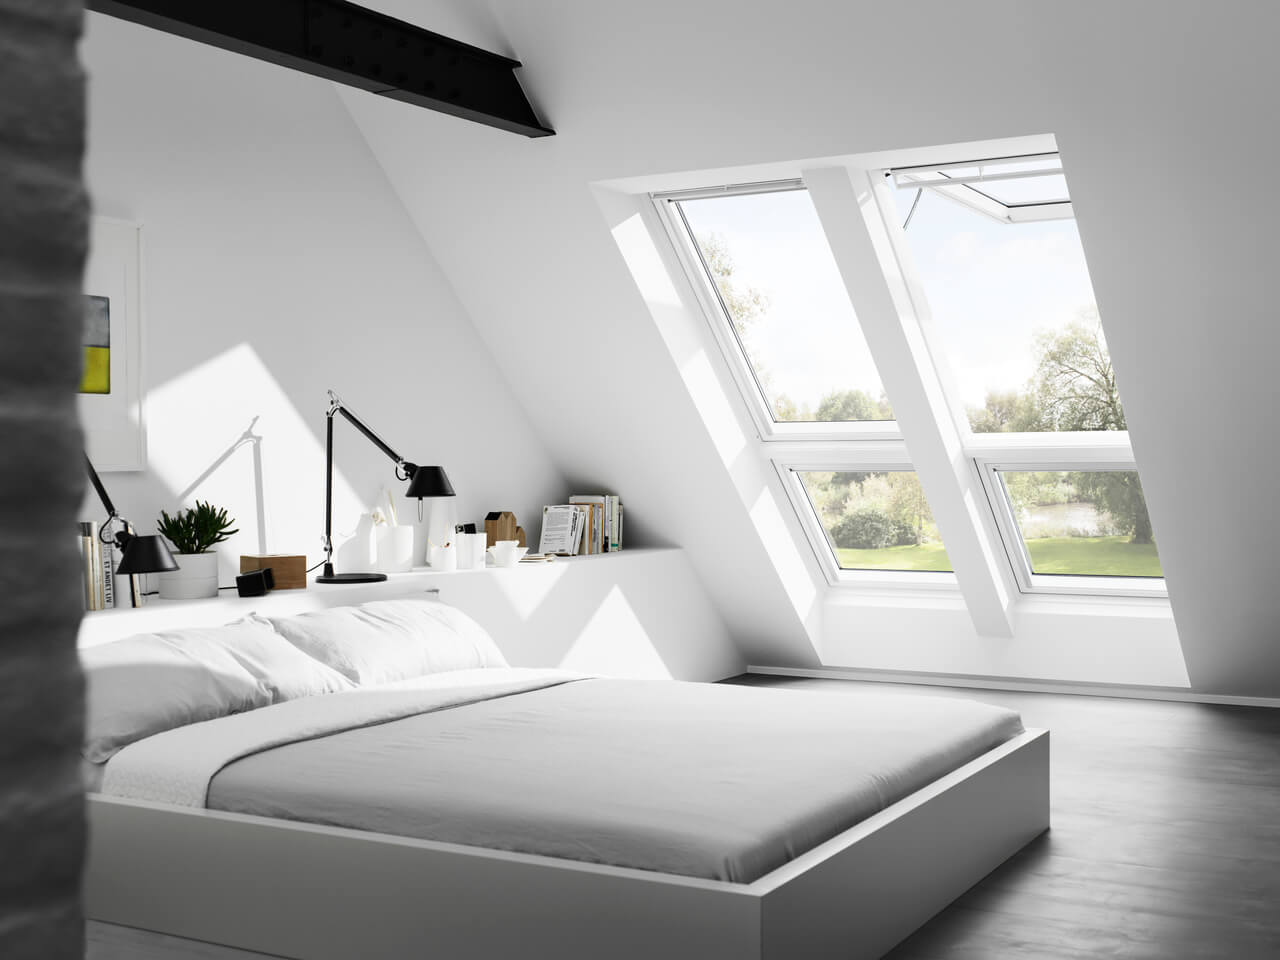 Quarto moderno no sótão com janelas de telhado VELUX e decoração minimalista.